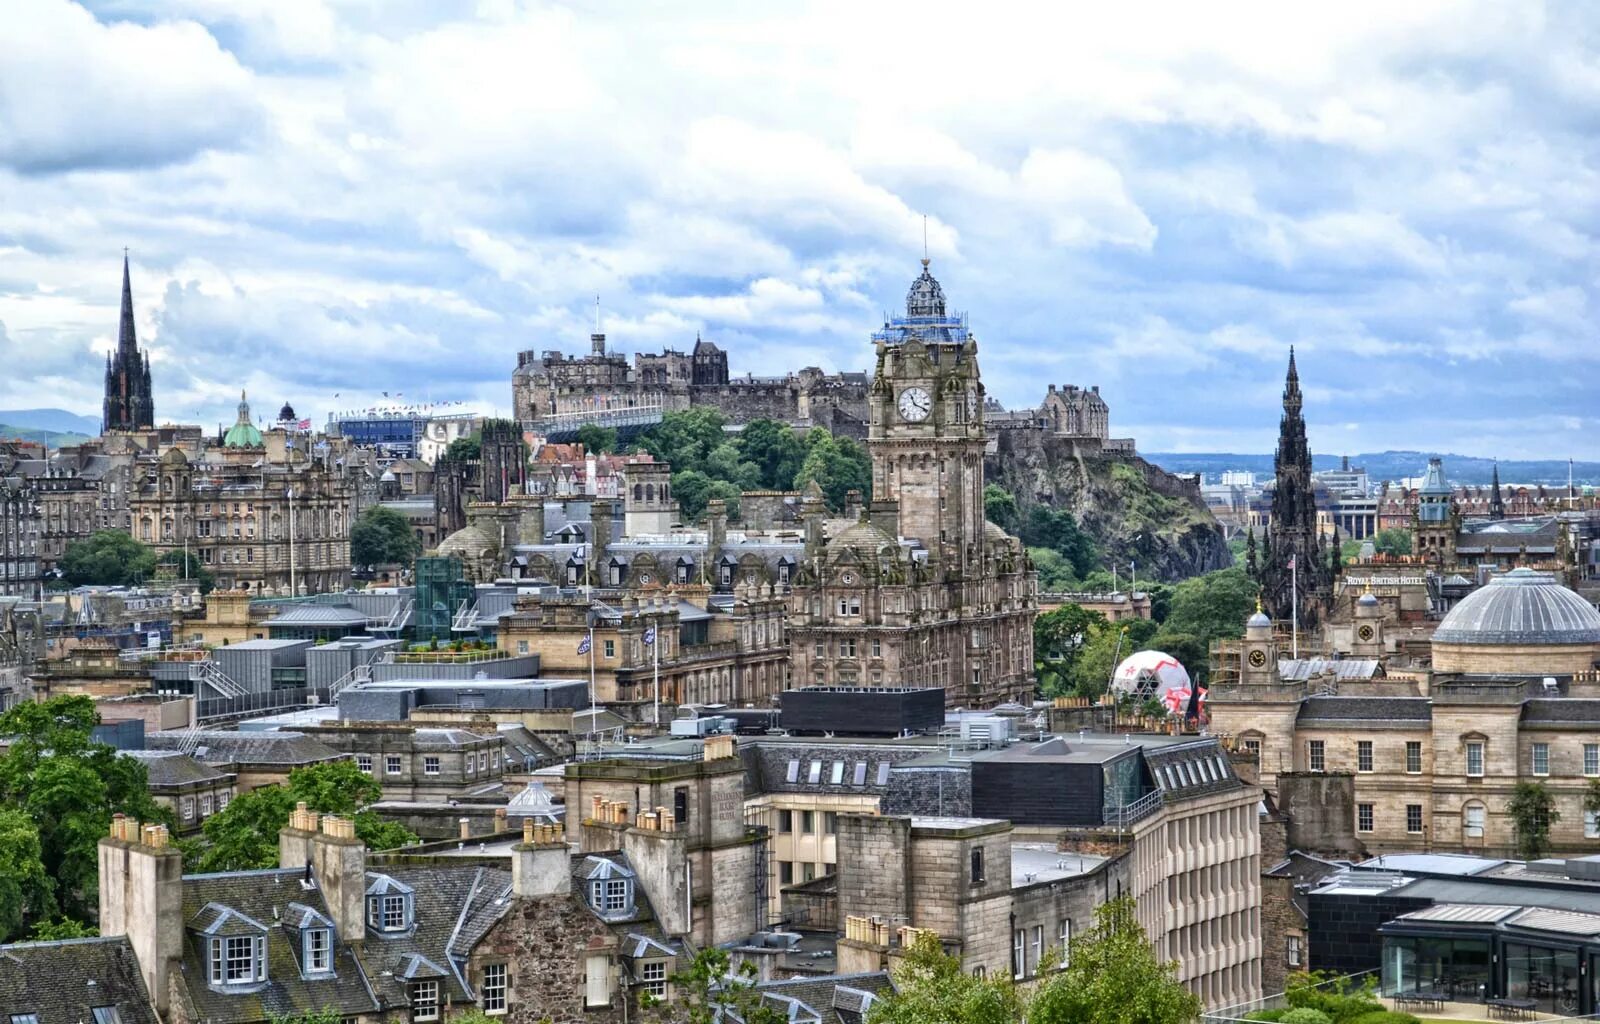 Площадь шотландии. Шотландия столица Эдинбург. Эдинбург, Шотландия, Великобритания. Столице Шотландии, городе Эдинбурге. Эдинбург столица Шотландии фото.